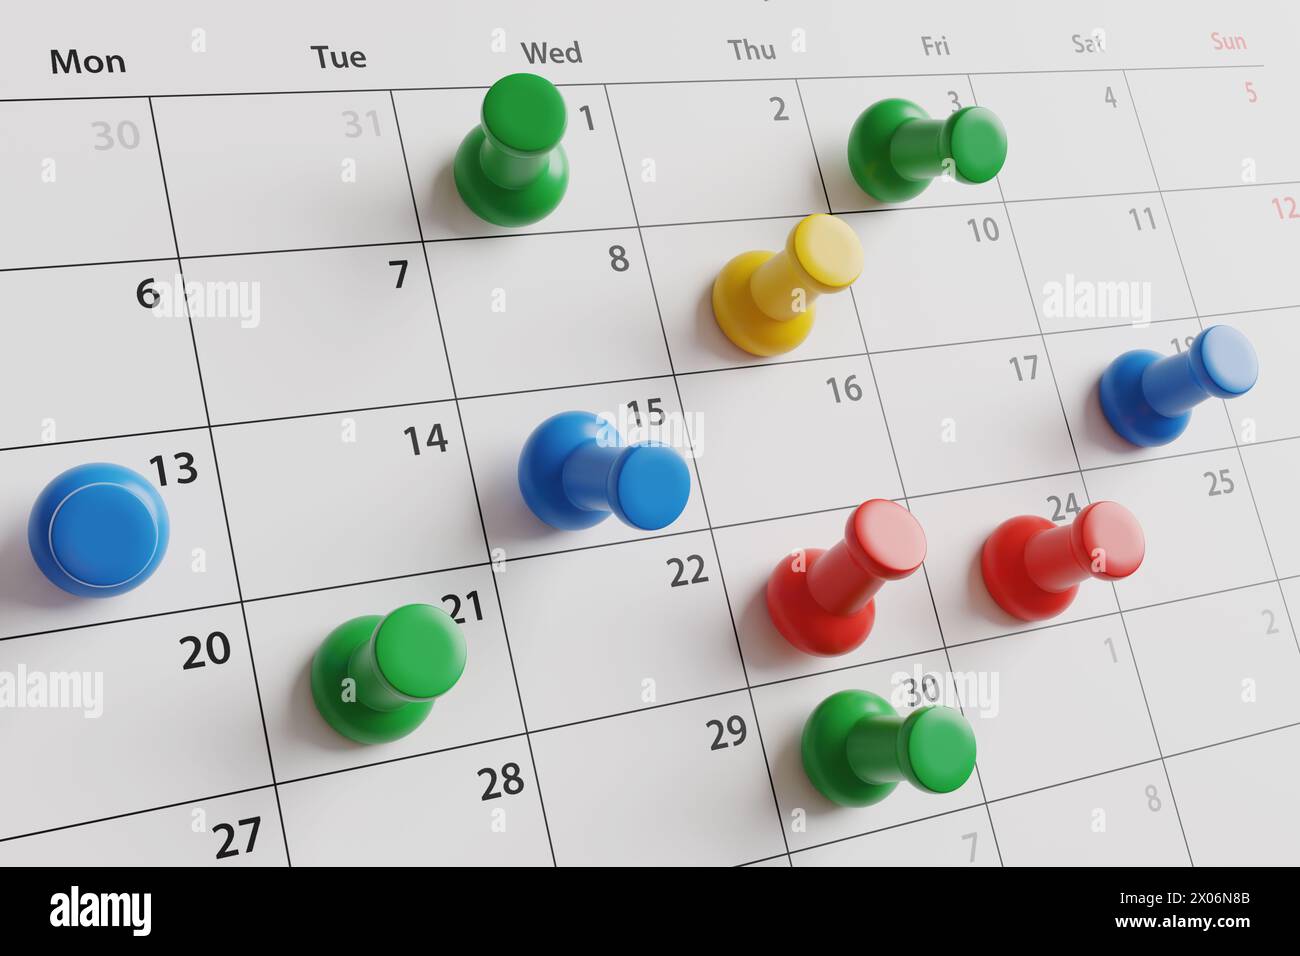 Calendario mensile fissato con pin push di colori diversi. Illustrazione del concetto di programmi aziendali, date degli eventi, date di scadenza, scadenze Foto Stock